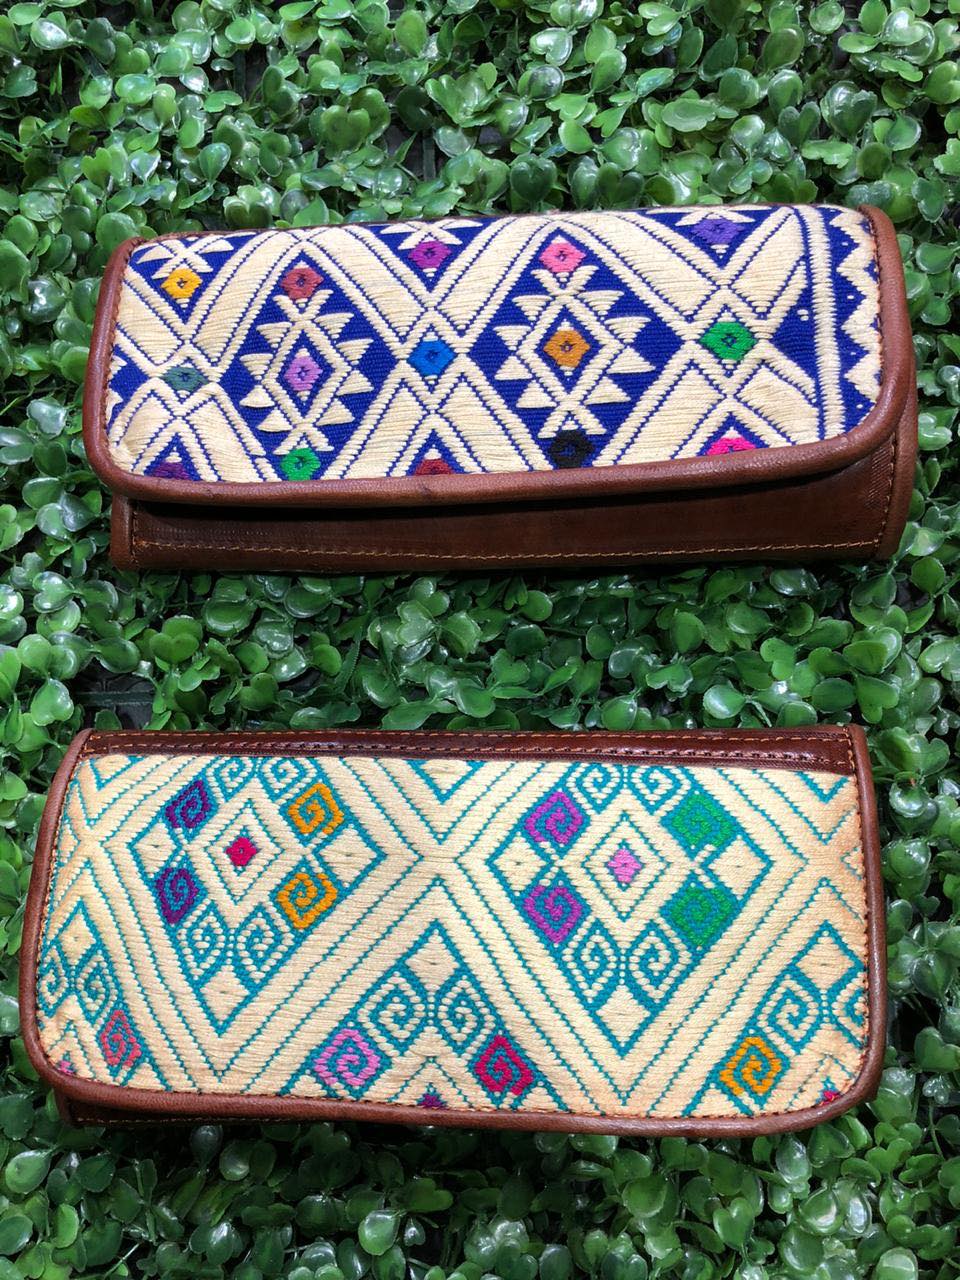 Carteras de piel con bordado artesanal mexicano